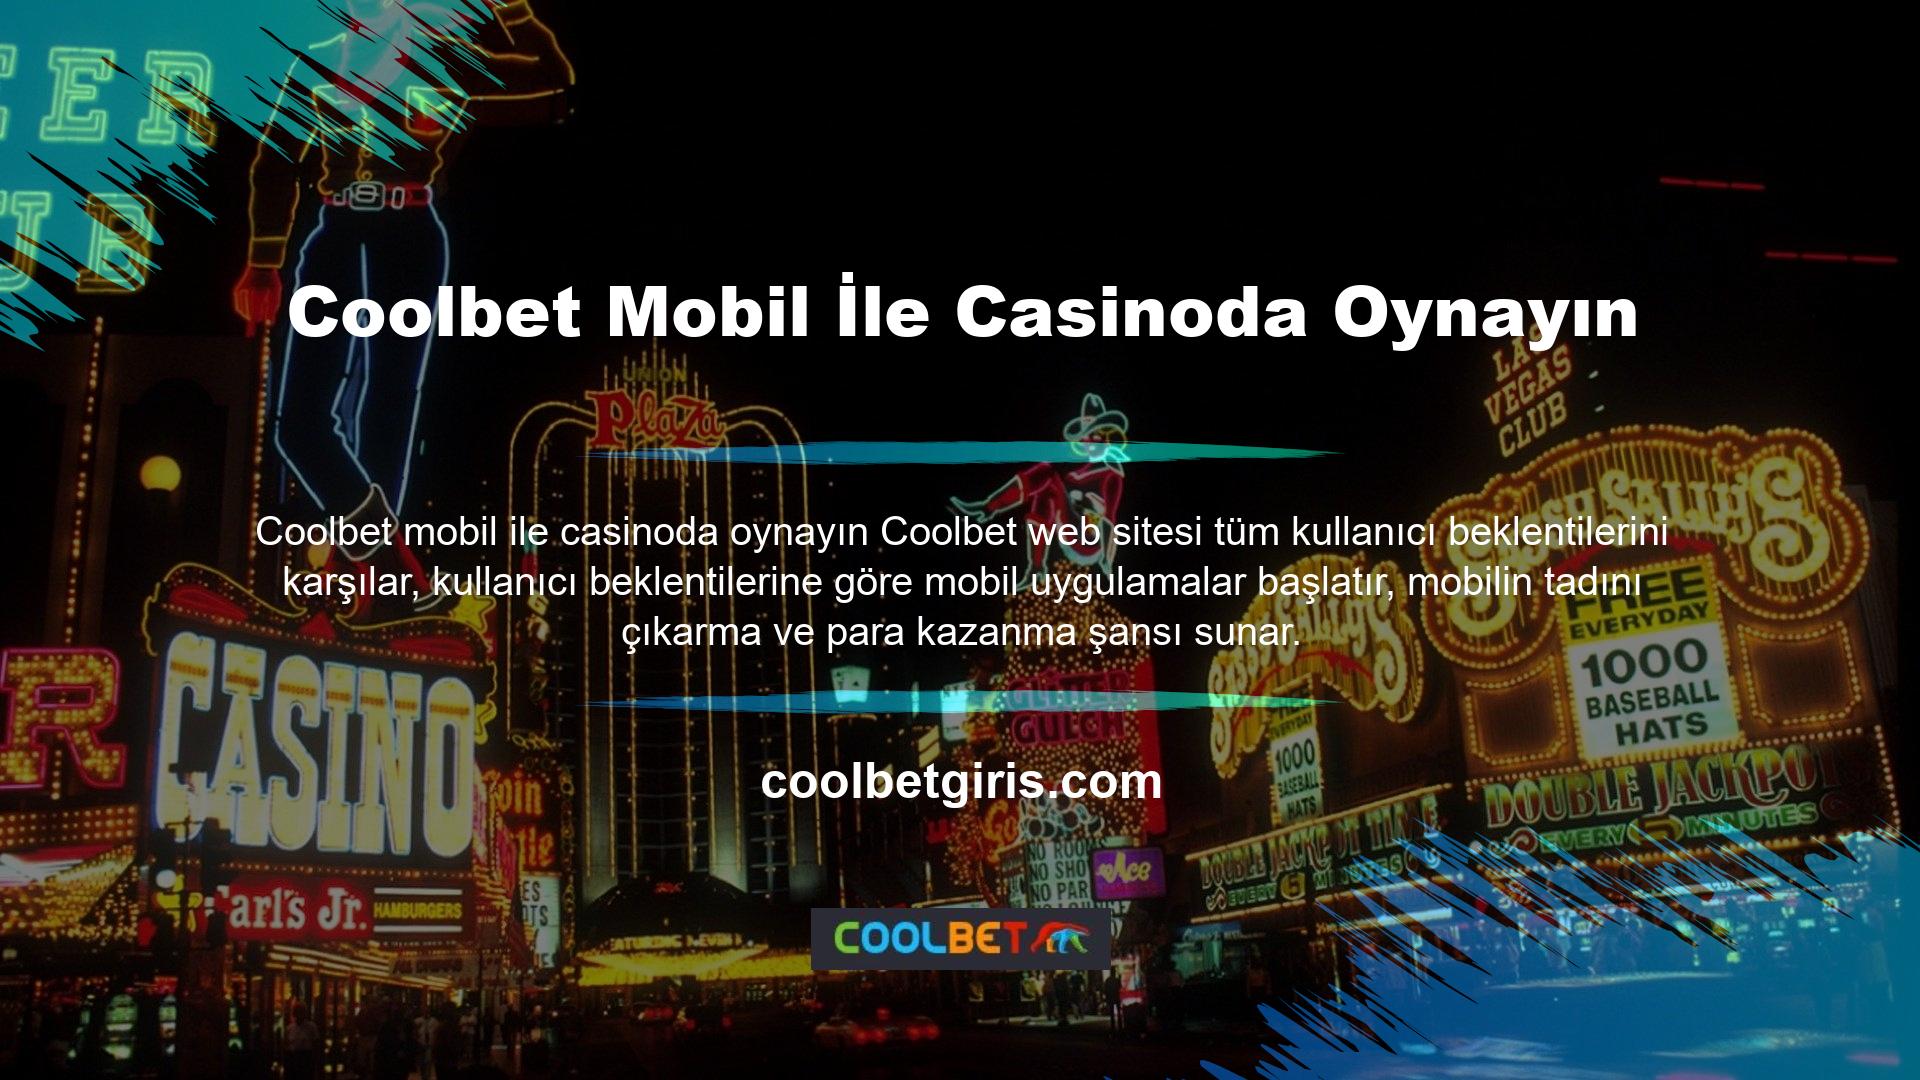 Coolbet, cep telefonunuzdan casino oynamanıza izin veren bir web sitesidir